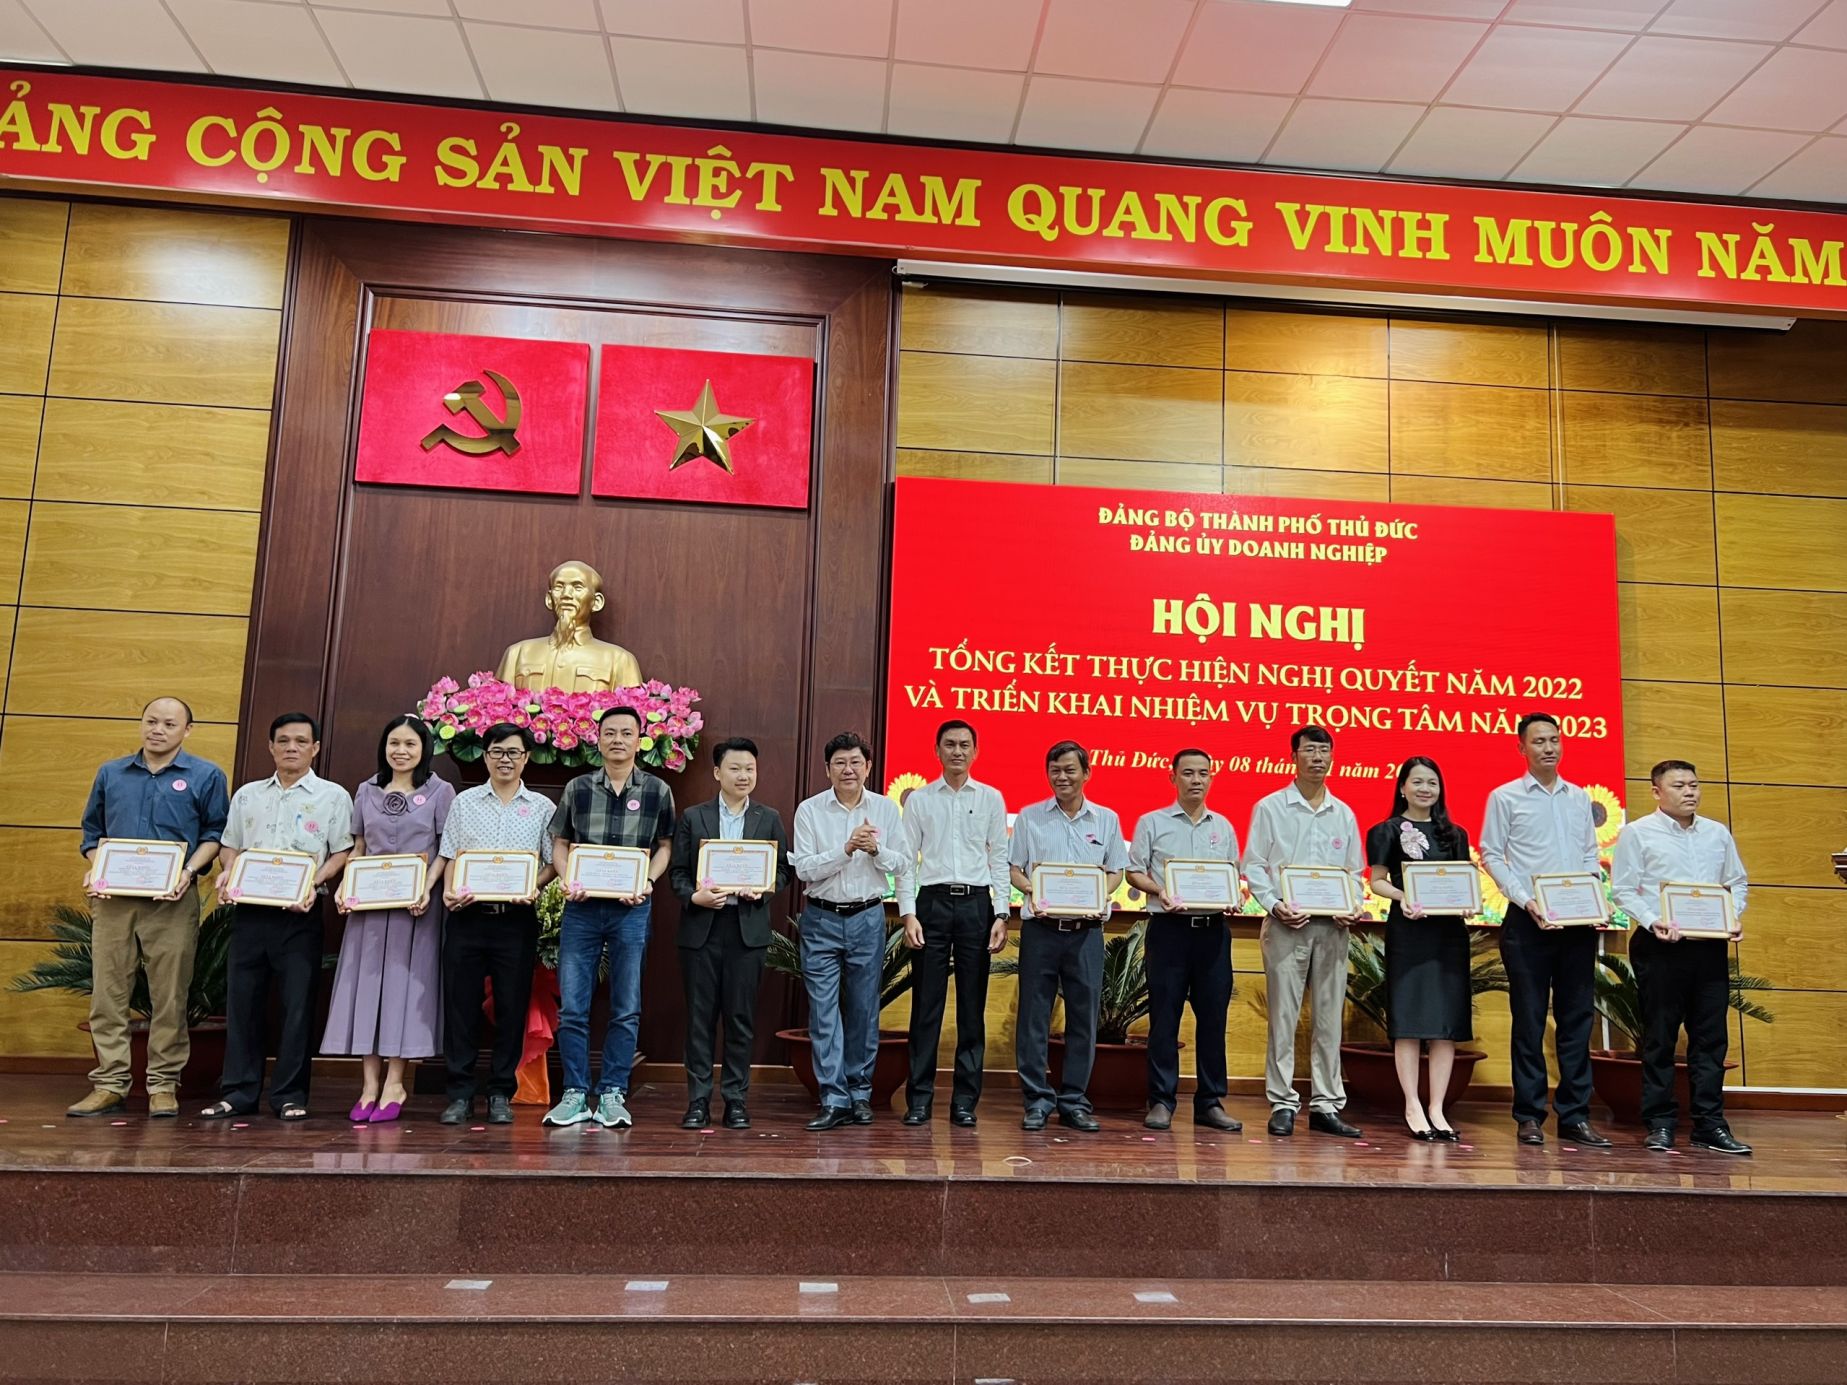 Chi bộ Công ty Tân Thanh nhận bằng khen Đảng Ủy Doanh nghiệp TP HCM